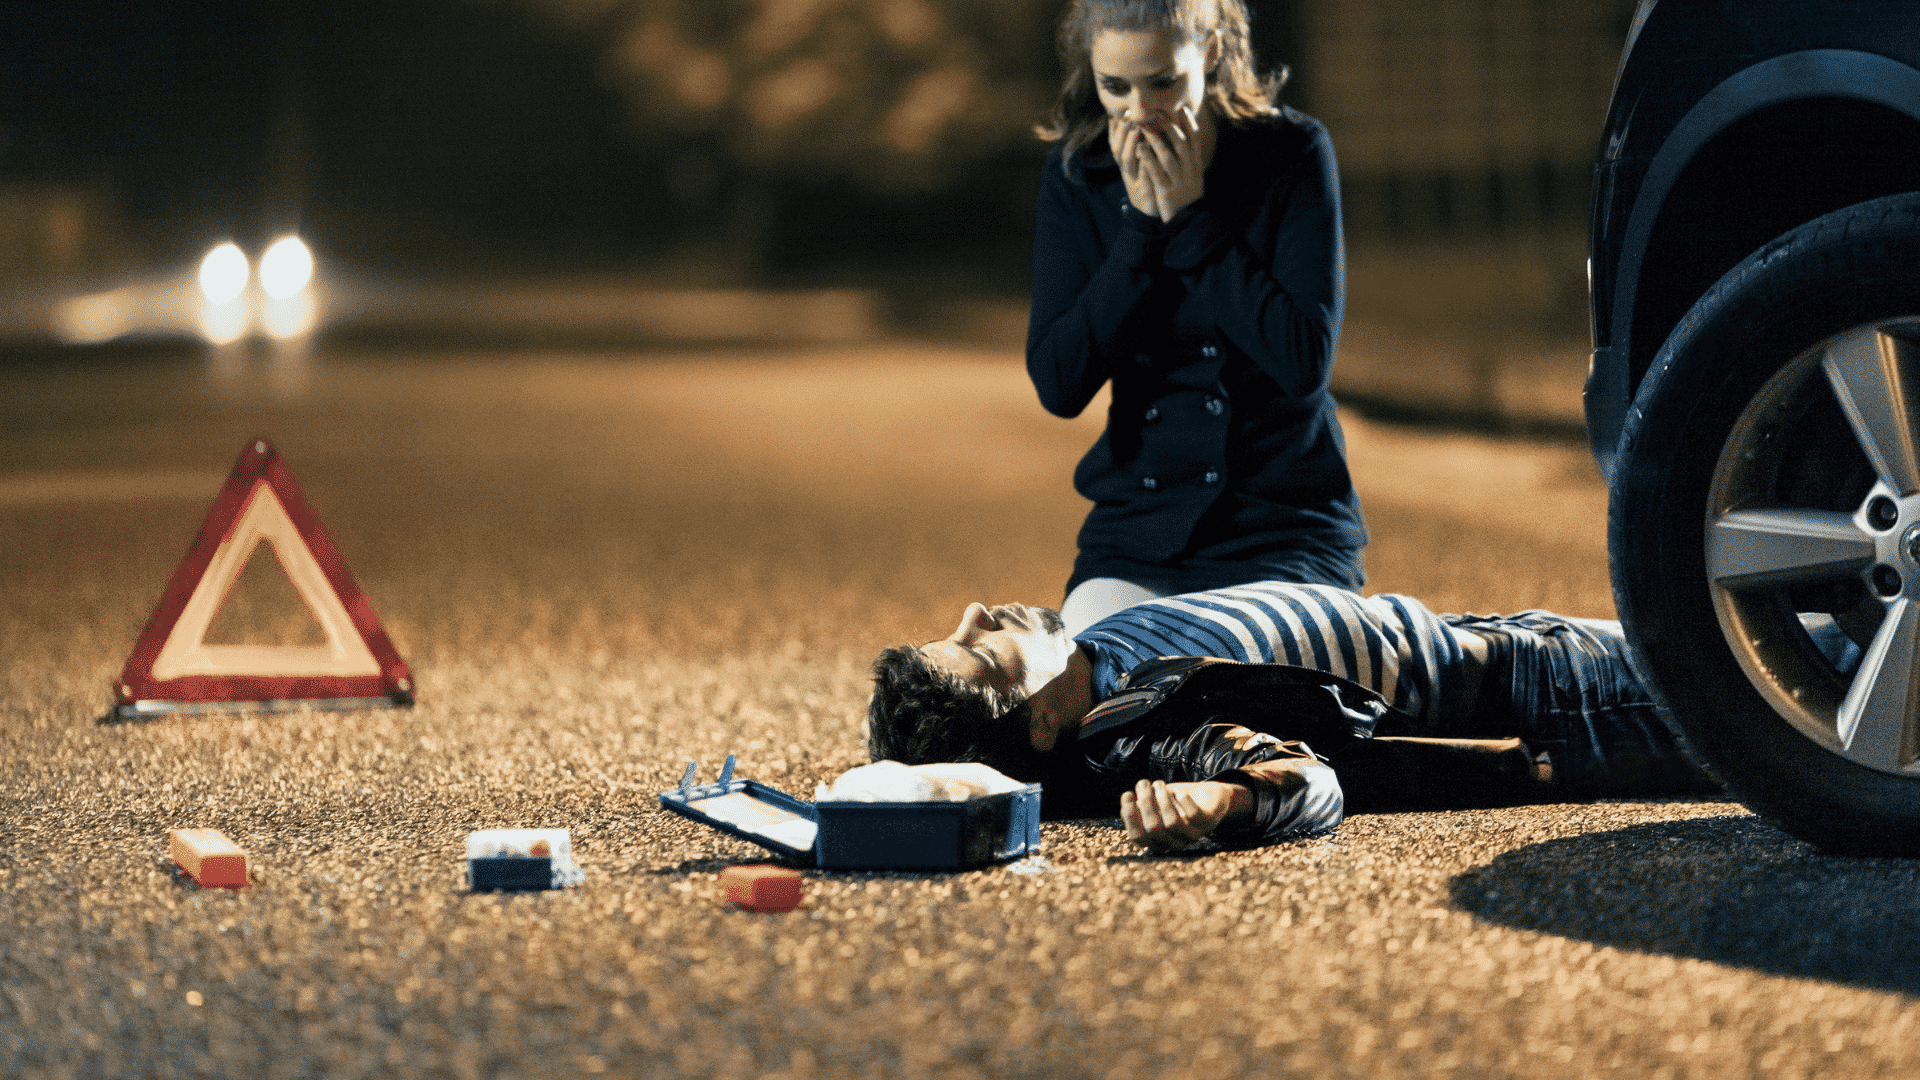 Mulher com os olhos arregalados e as mãos tampando a boca olhando um homem sem consciência no chão após um acidente de carro